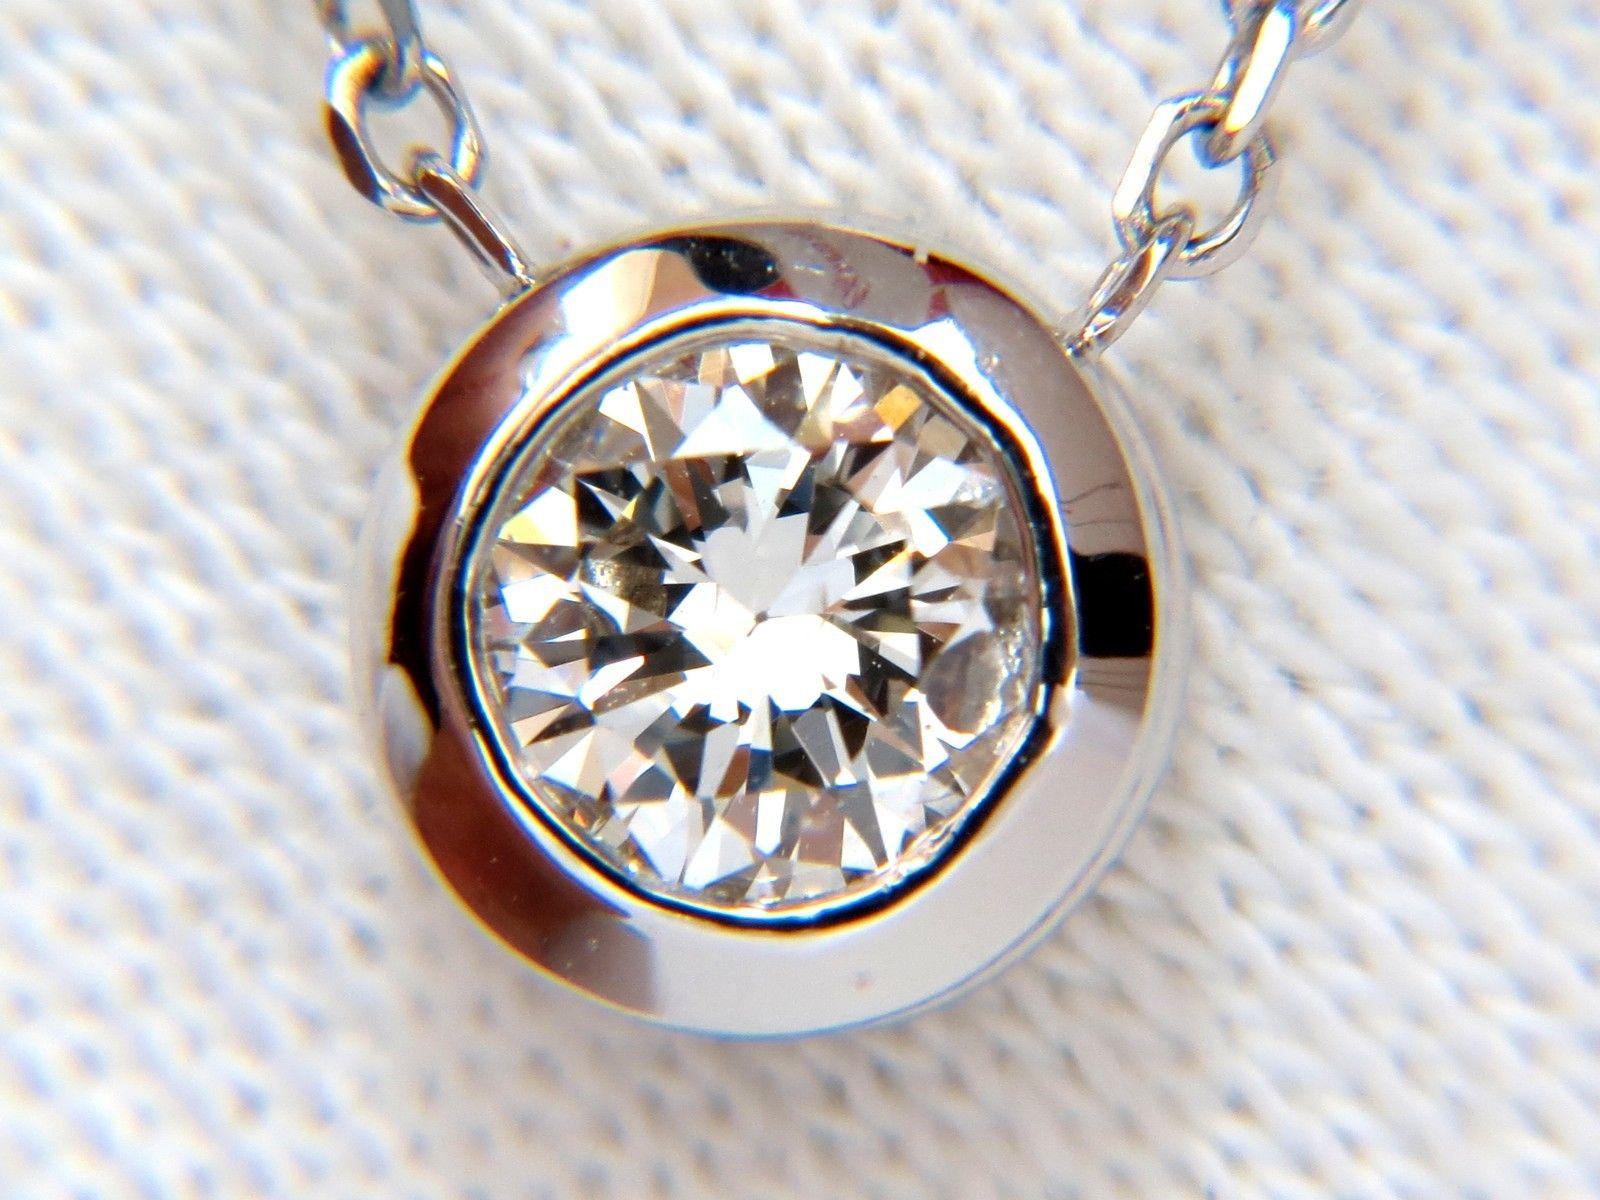 1 carat diamond bezel necklace